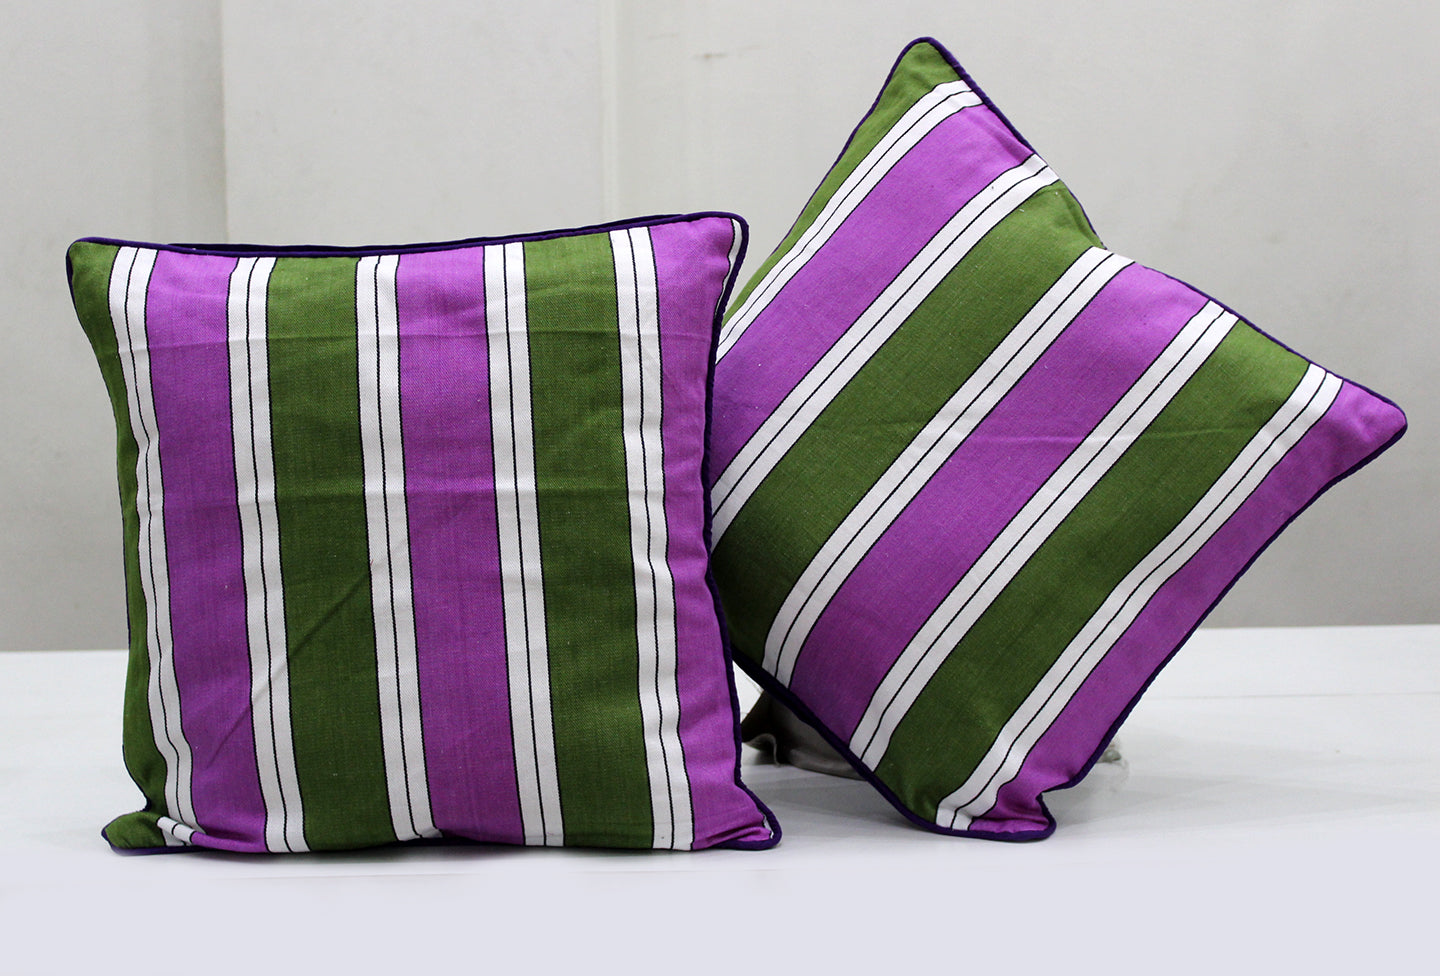 Woven Stripe Cotton Cushion Cover - Multicolor